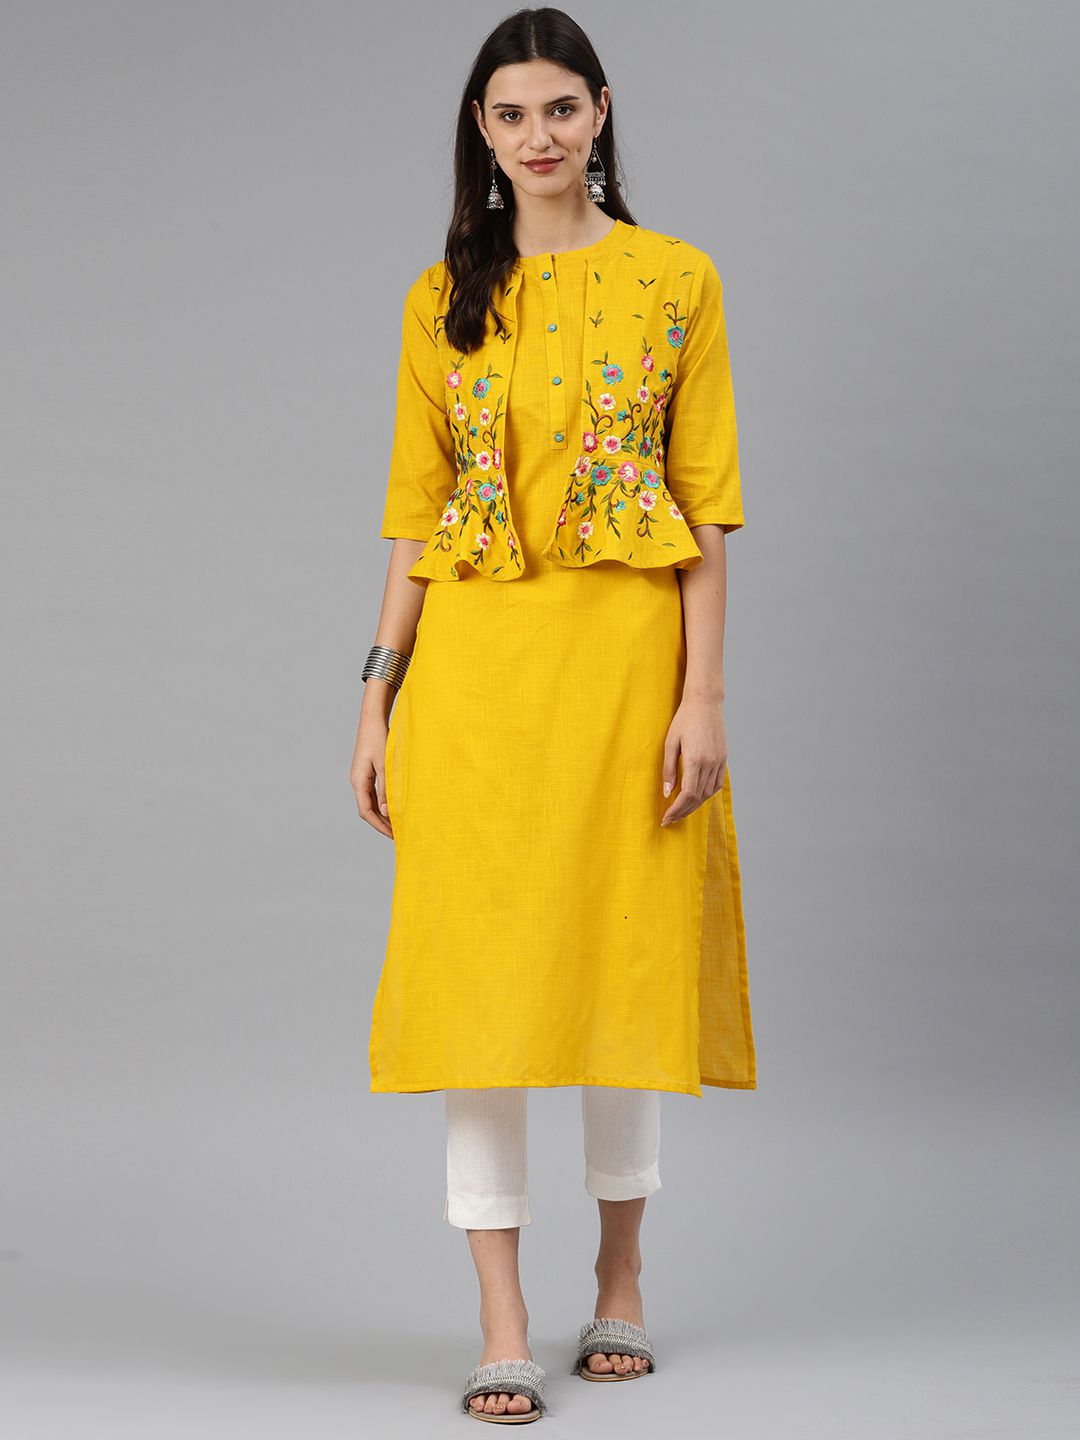     			Alena - Yellow Cotton Women's Jacket Style Kurti ( Pack of 1 )